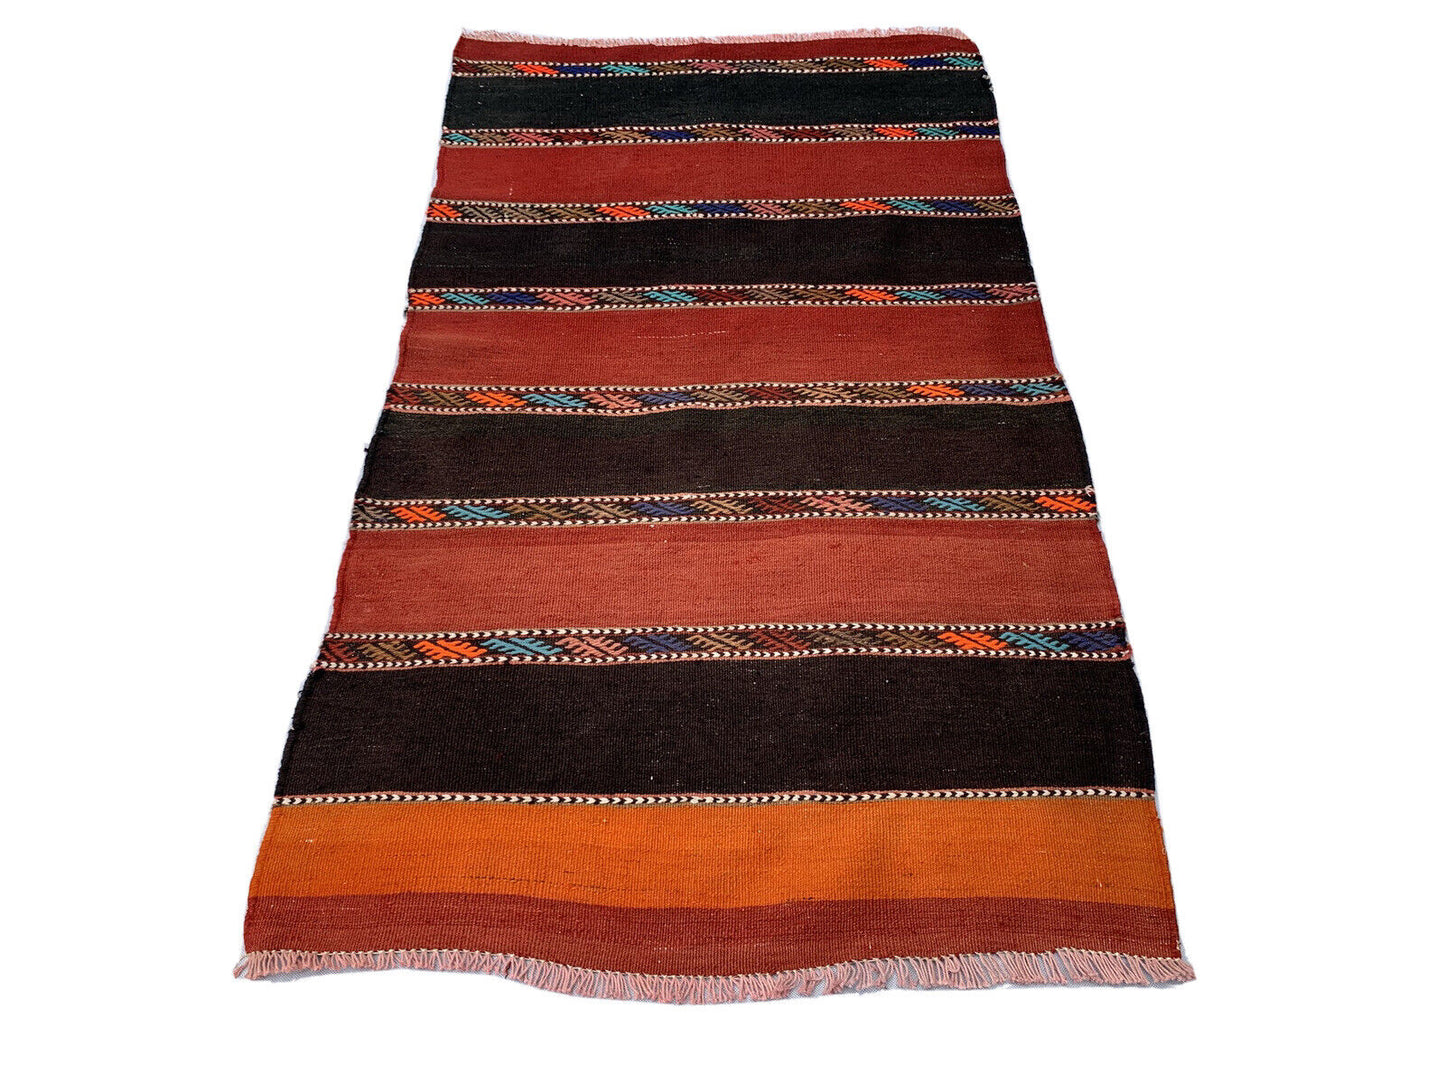 Traditional Turkish Kilim Rug,Vintage Kelim Teppich 130x74 cm